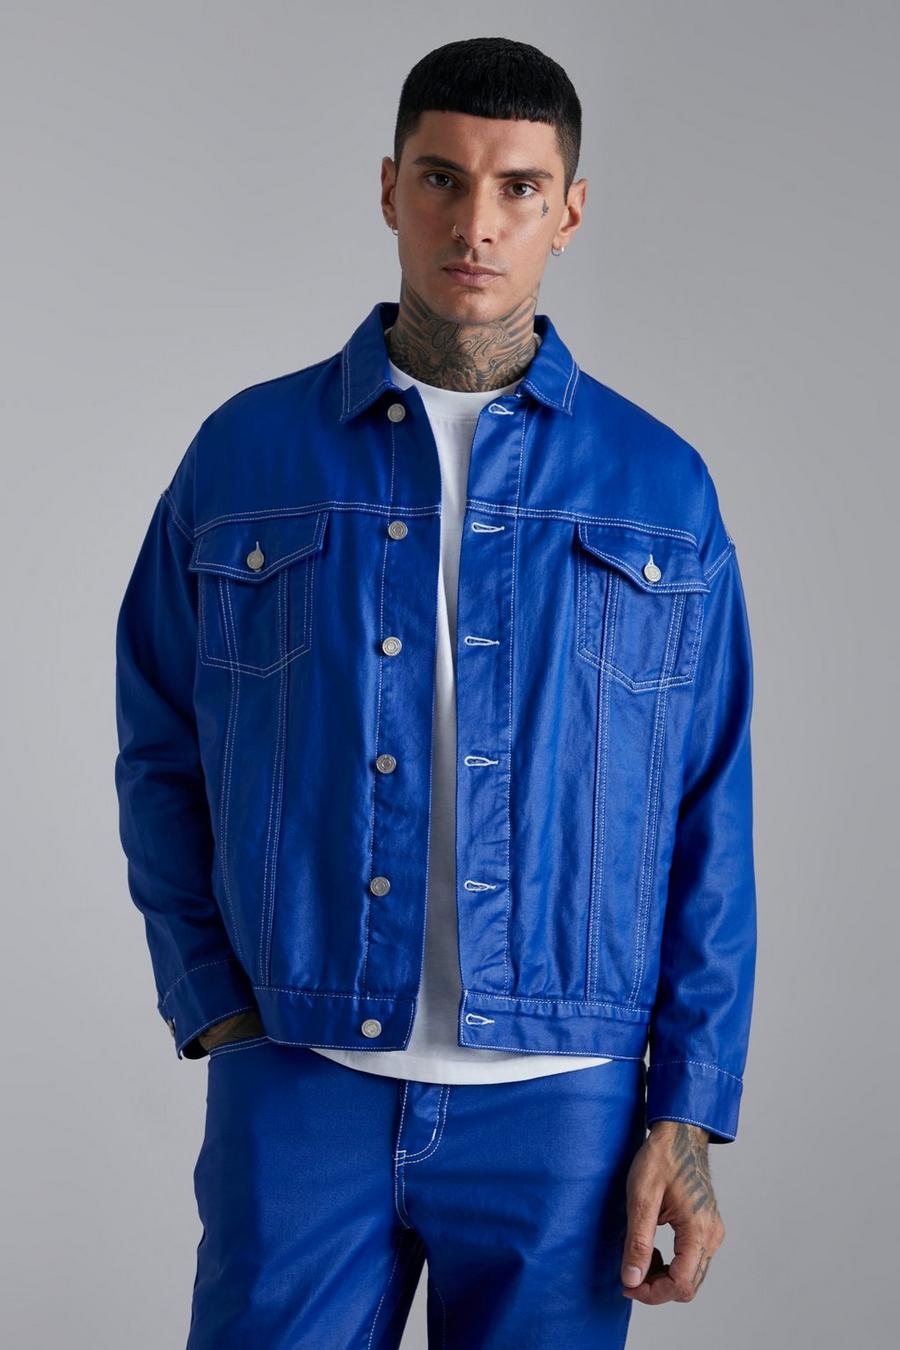 כחול azzurro ז'קט אוברסייז קולור בלוק בגימור ג'ינס עם תפרים בצבעים מנוגדים